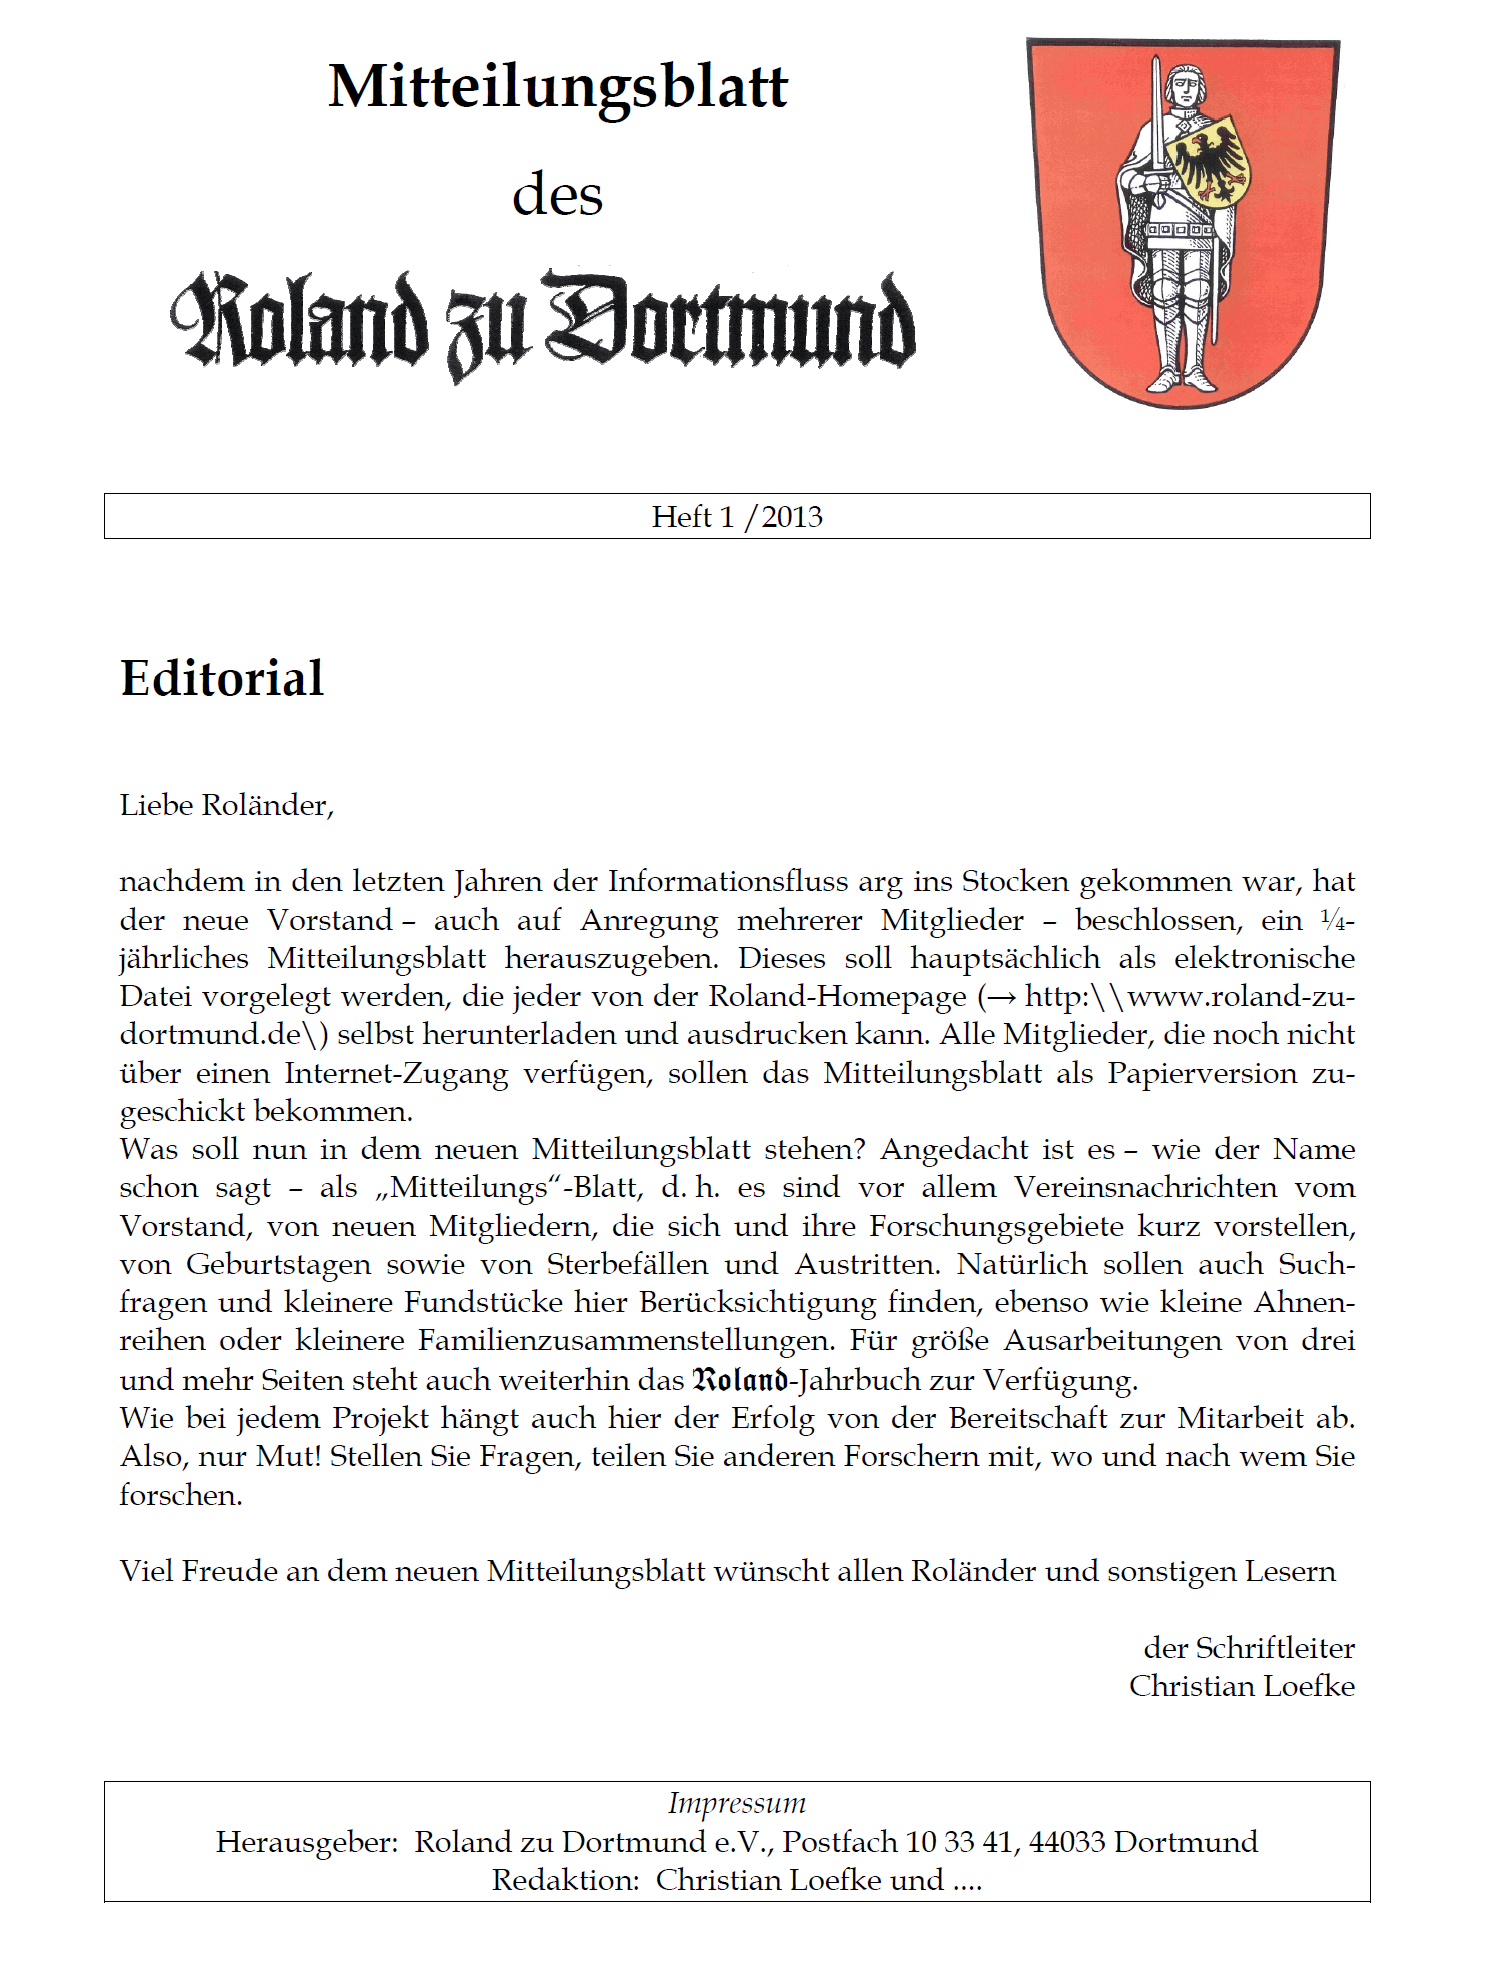 RzD-Mitteilungsblätter 2013-2019